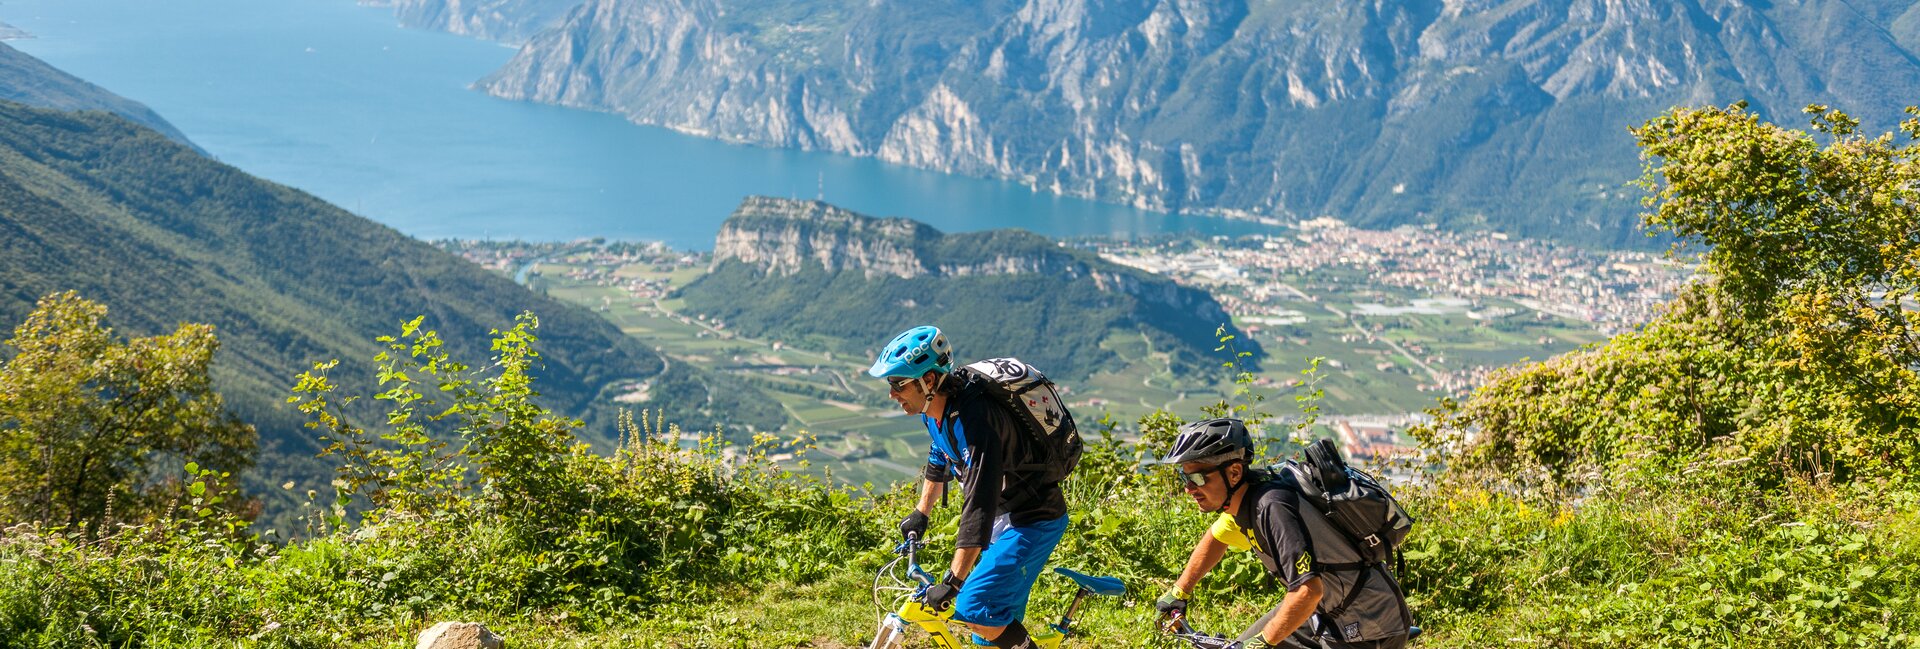 Рива-дель-Гарда - Маршруты для горных велосипедов